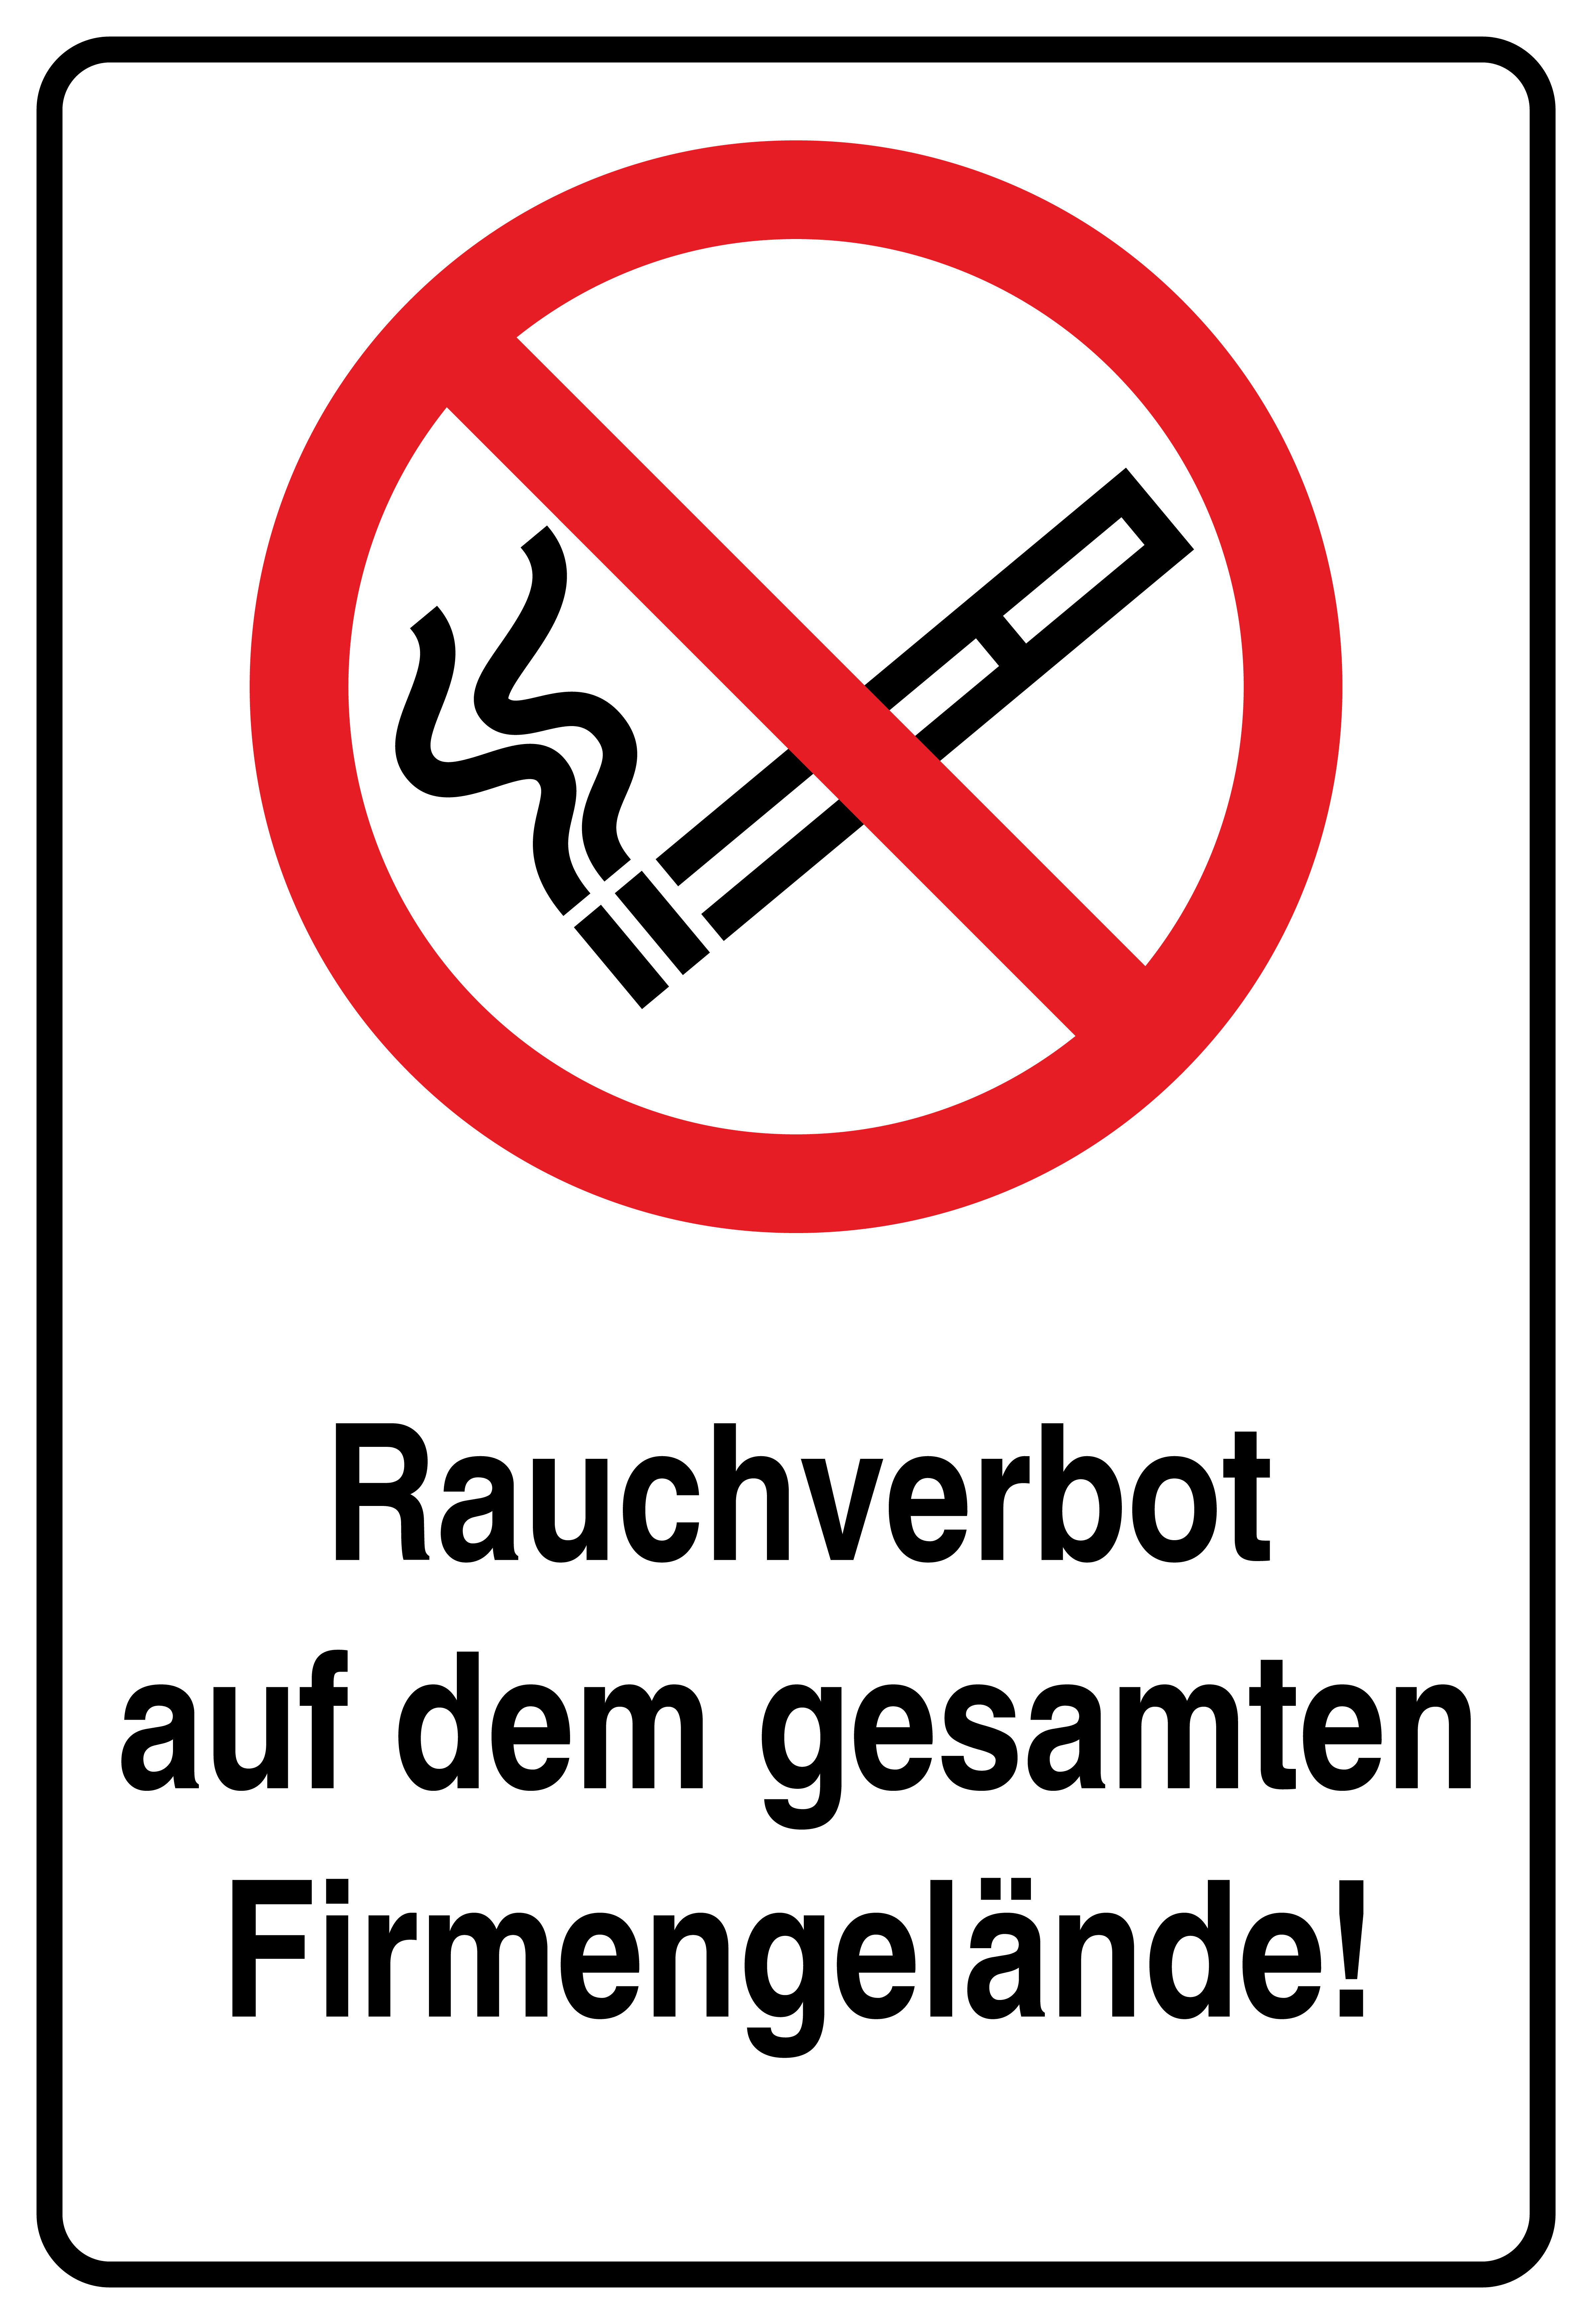 Rauchverbot auf dem Firmengelände 20x30 cm Rauchen verboten Aufkleber